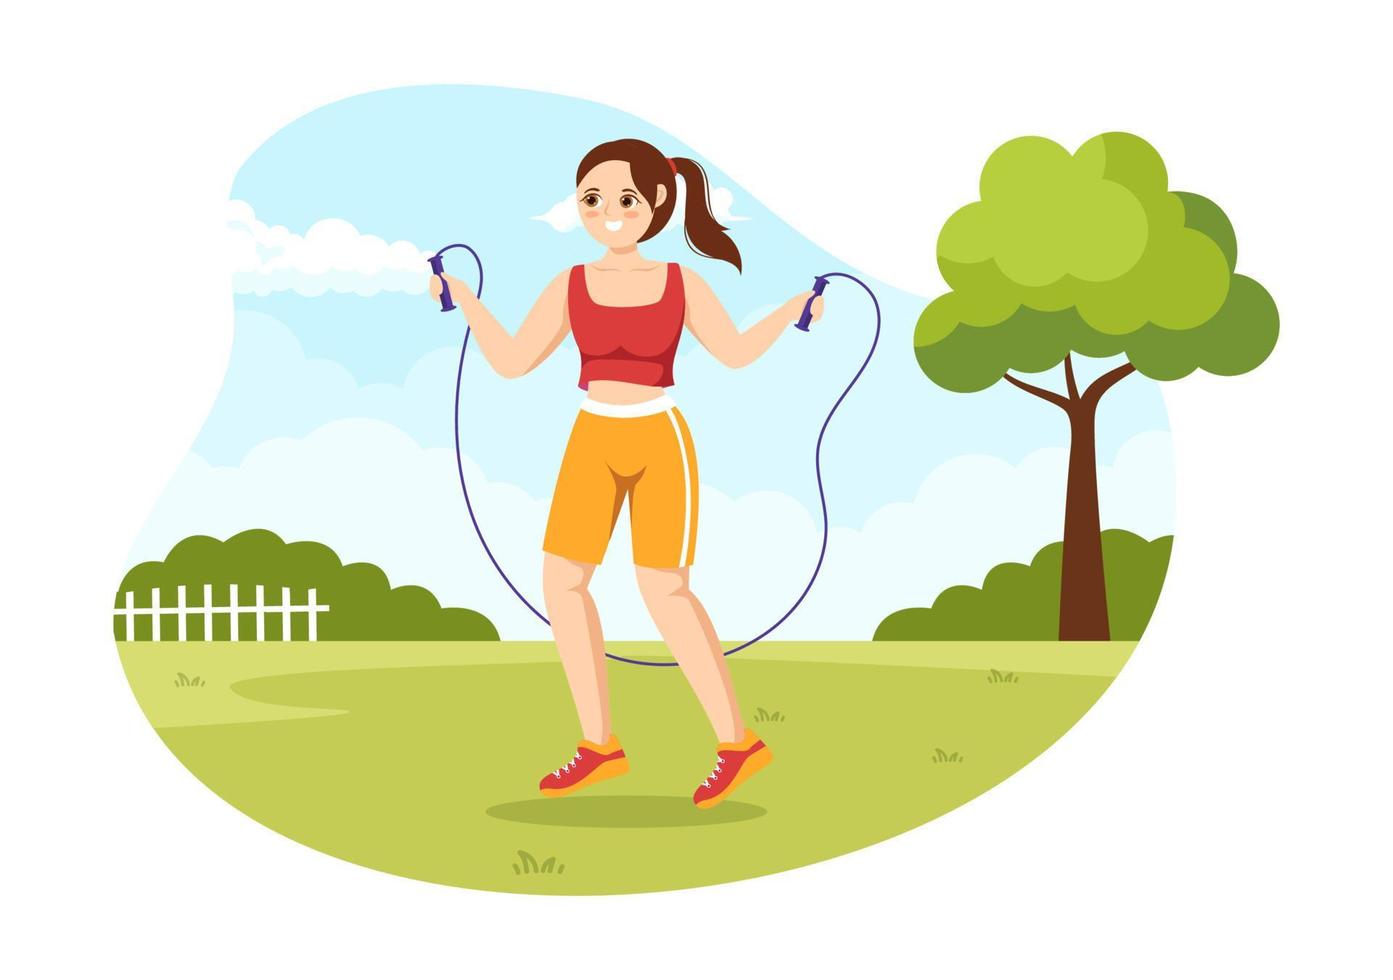 ilustración de saltar la cuerda con personas jugando saltando ropa deportiva en actividades deportivas de fitness en interiores plantillas dibujadas a mano de dibujos animados planos vector